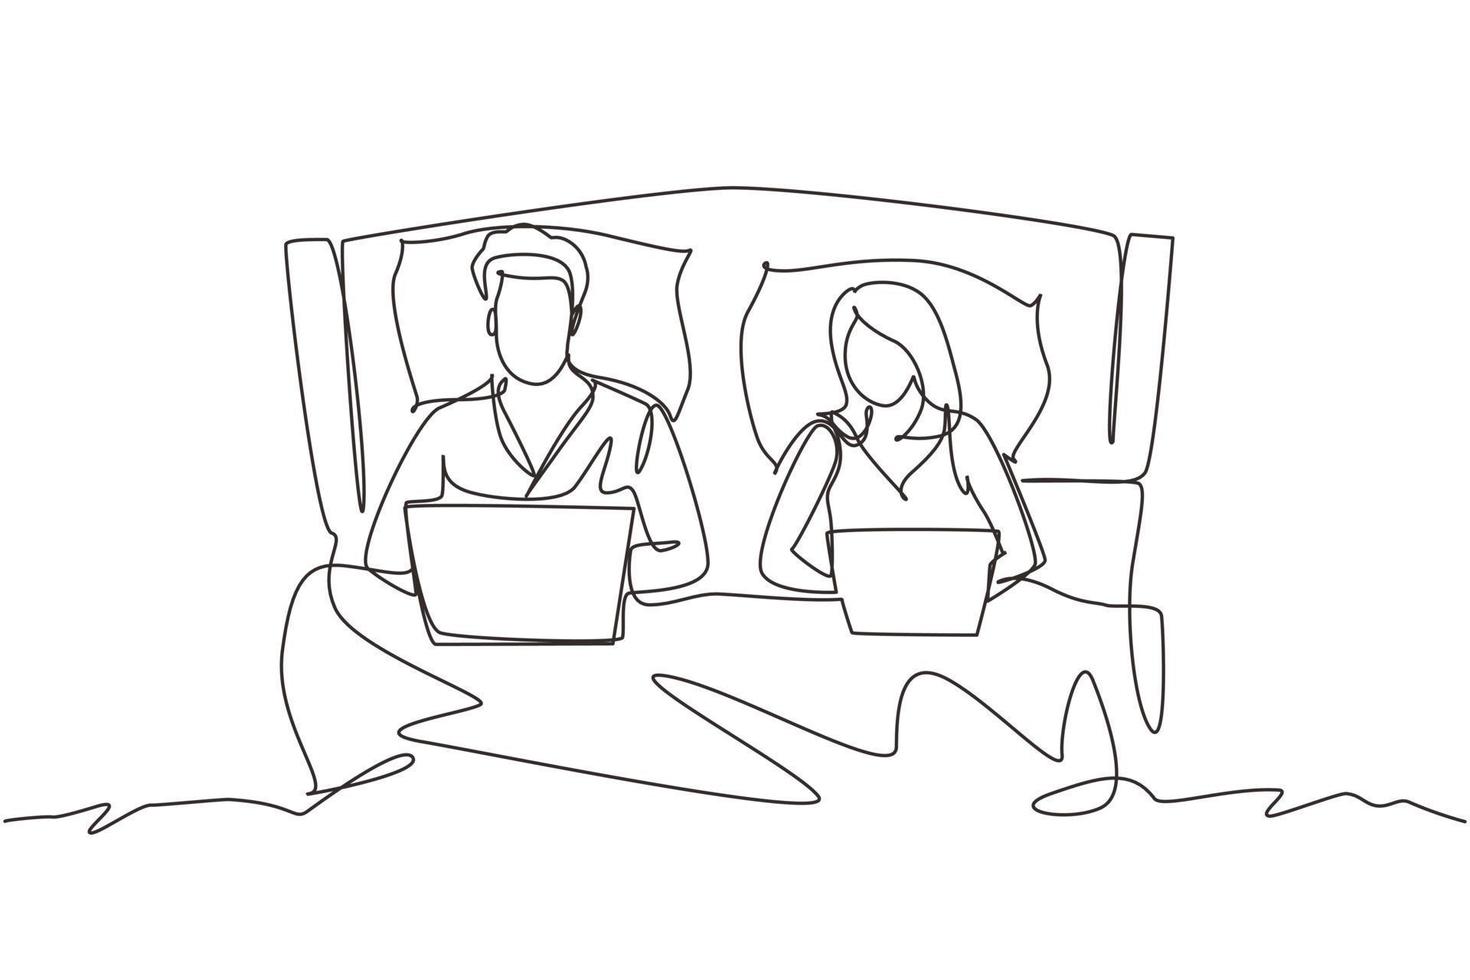 kontinuerlig en rad ritning par i sängen. man och kvinna med laptop surfar på internet. lyckligt äktenskap aktivitet före sömn. romantiskt par vilar i sovrummet. en rad rita design vektorgrafik vektor